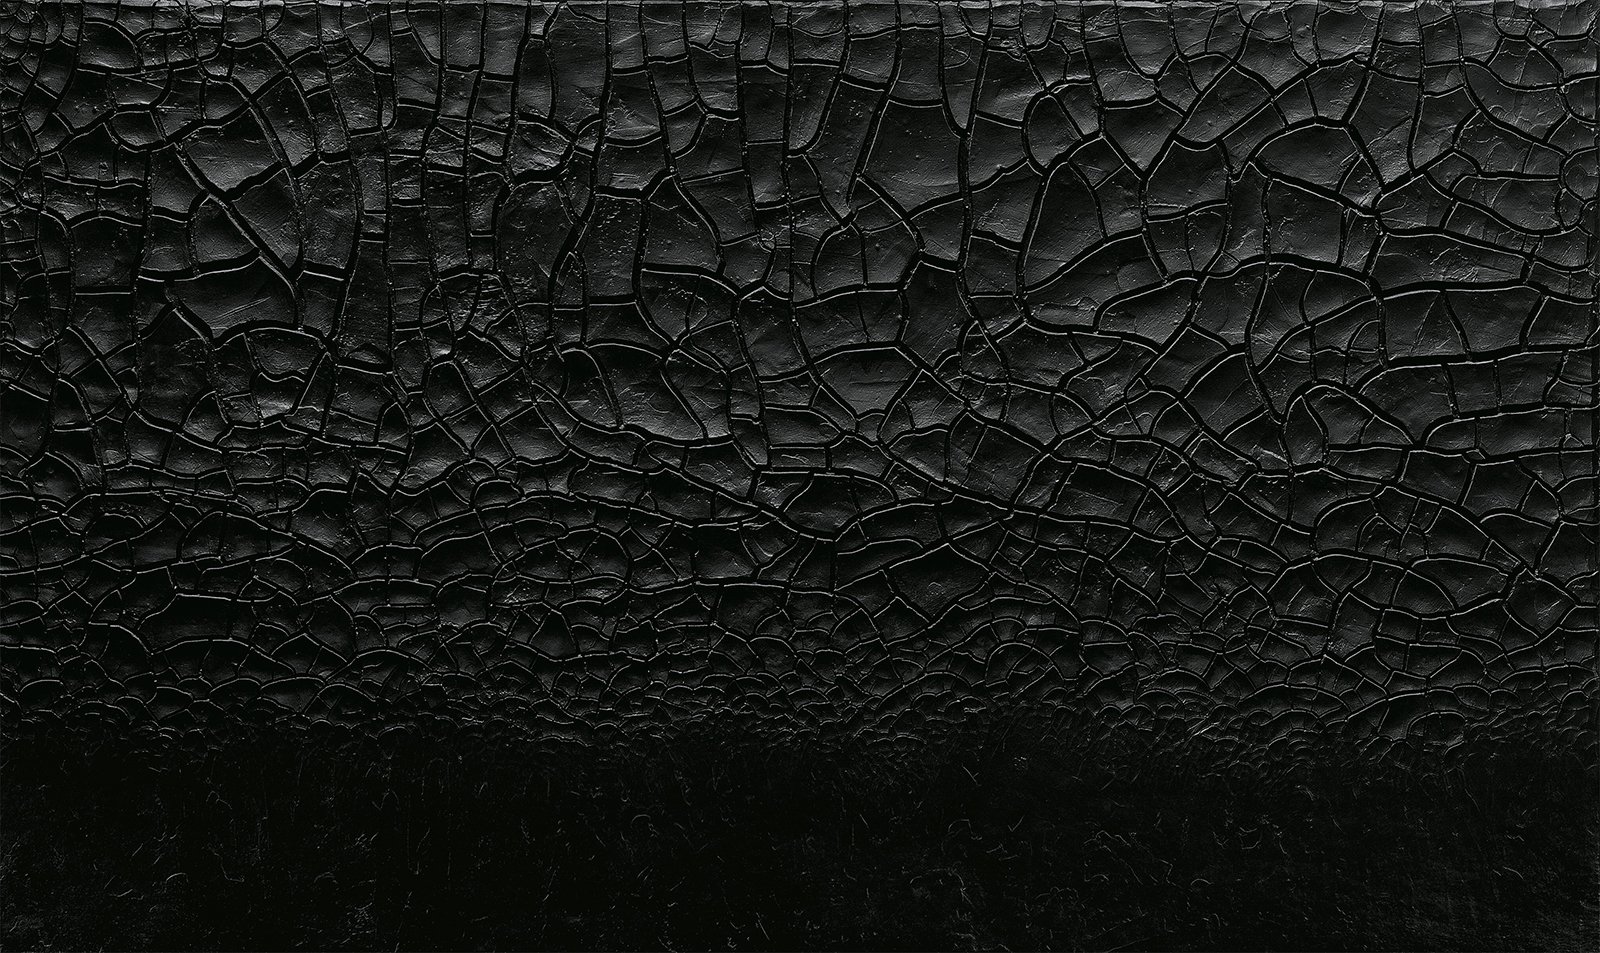 Alberto Burri,&nbsp;Nero cretto (Black Cretto), 1976. Acrylic and PVA on Celotex, 147.3 x 246.5 cm. Courtesy Luxembourg &amp; Dayan